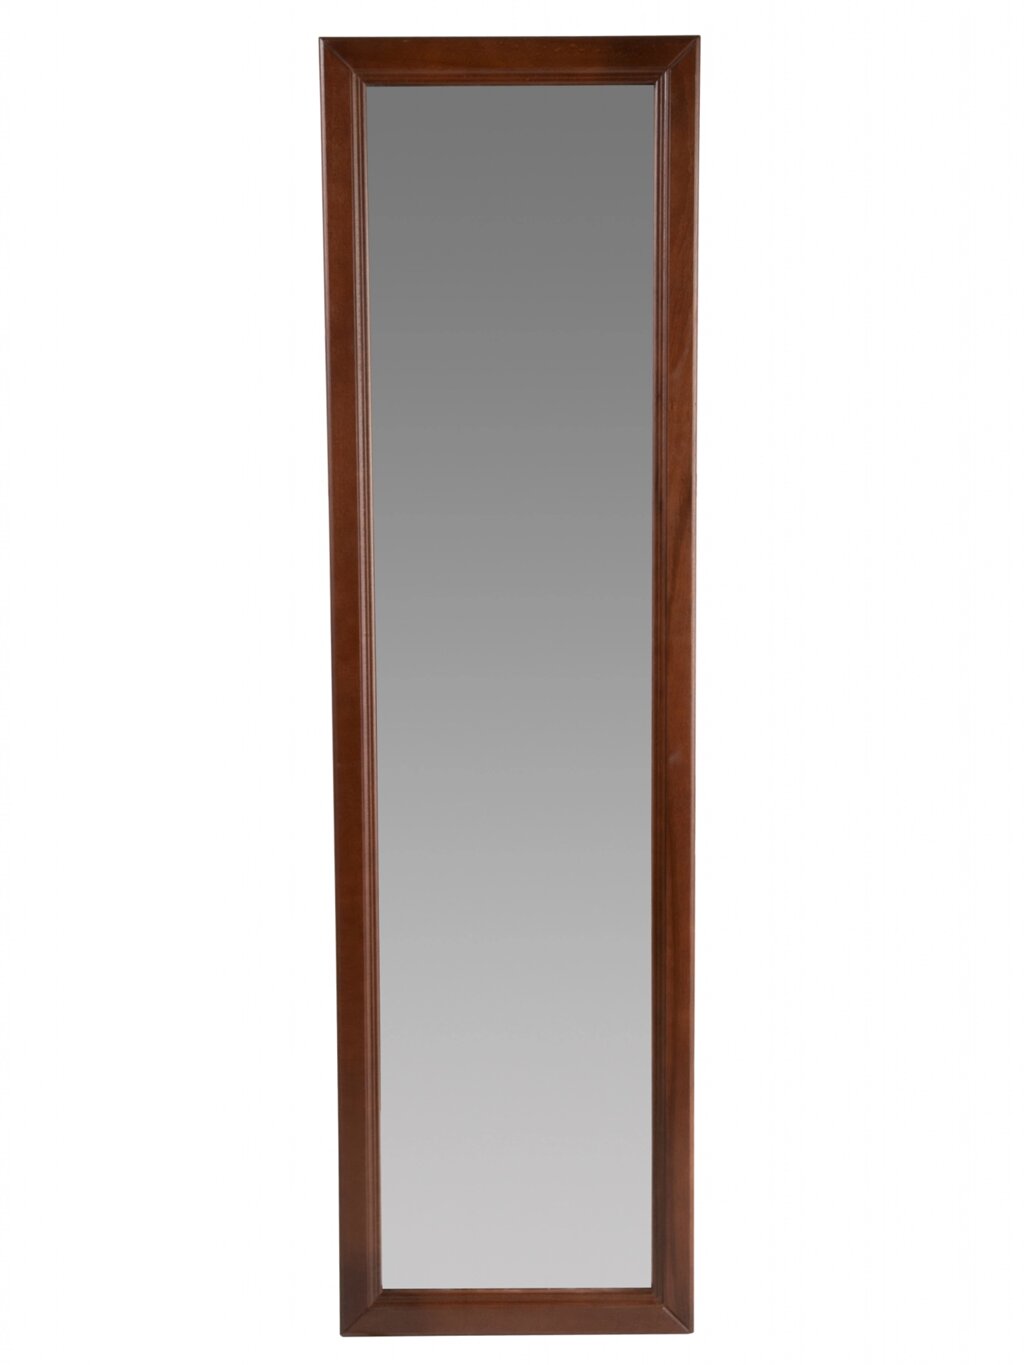 Зеркало настенное Селена махагон 119 | 5 смх 33 | 5 см от компании M-Lion мебель - фото 1